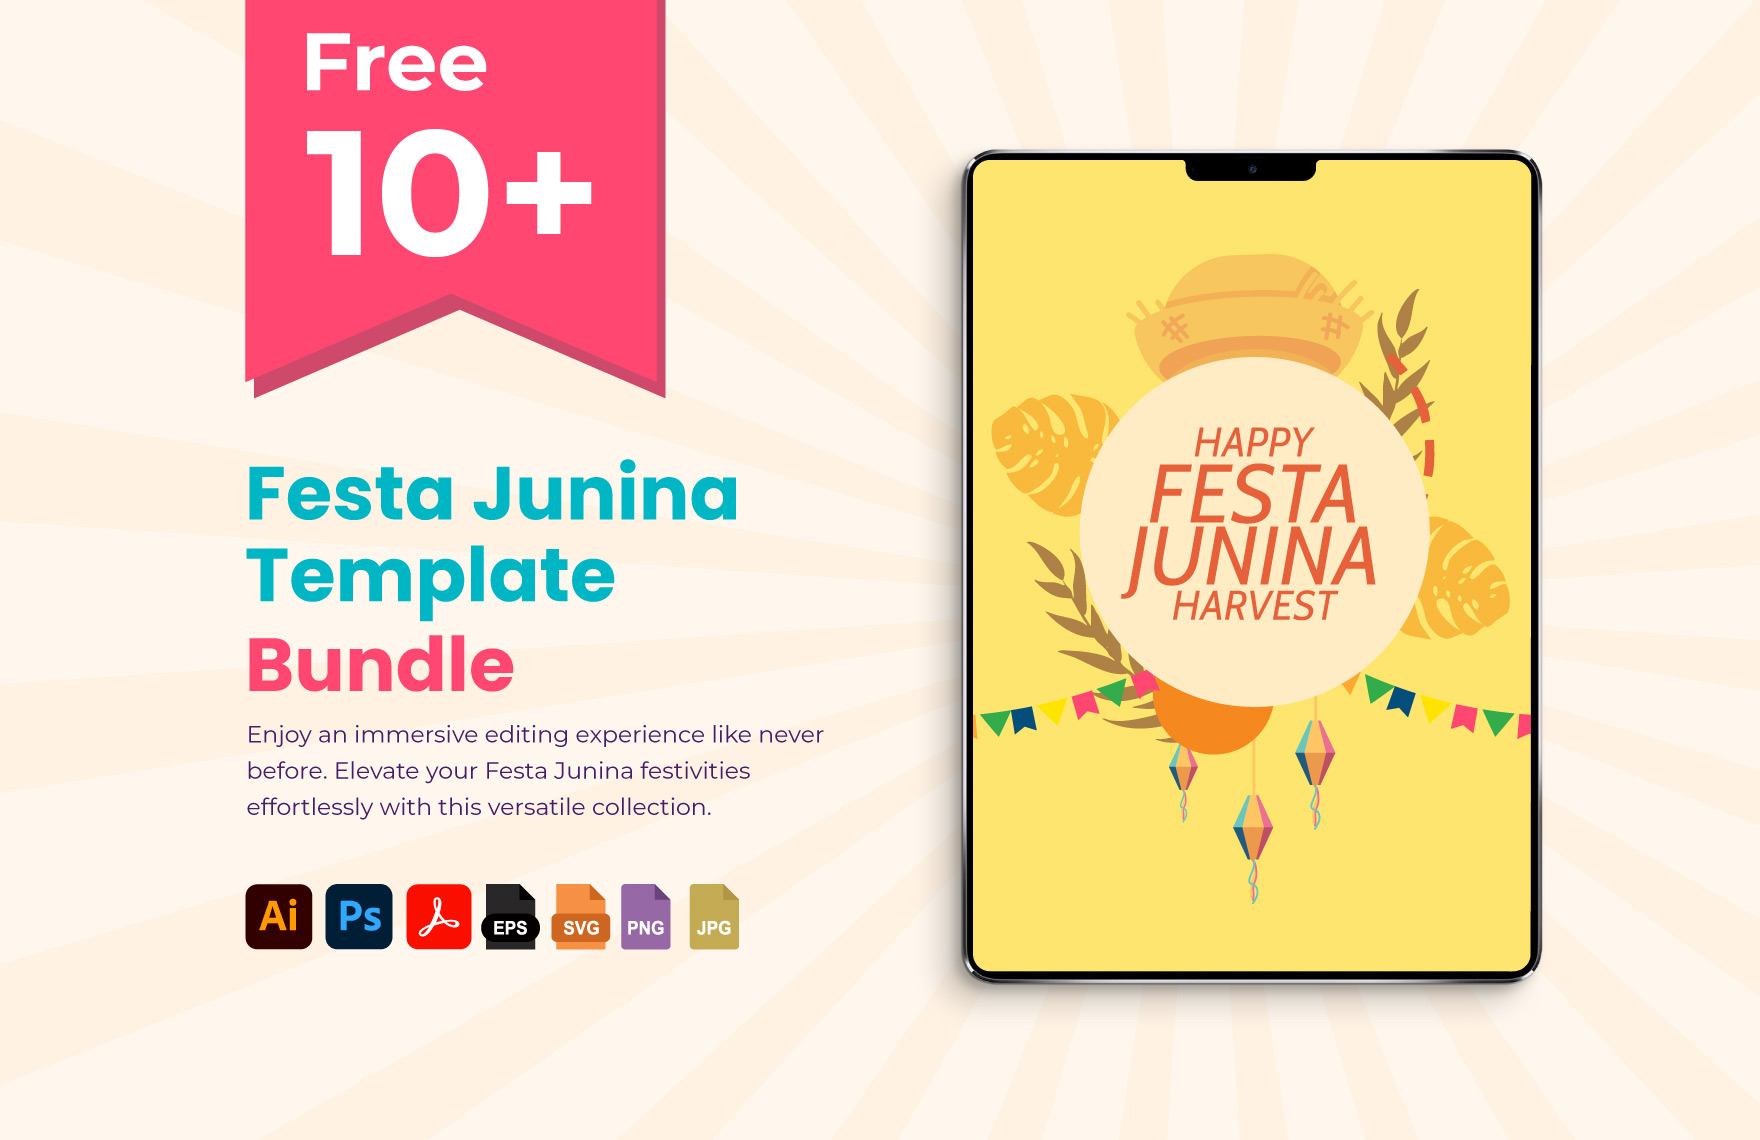 Free 05+ Festa Junina Template Bundle in PDF, Illustrator, PSD, EPS, SVG, JPG, PNG